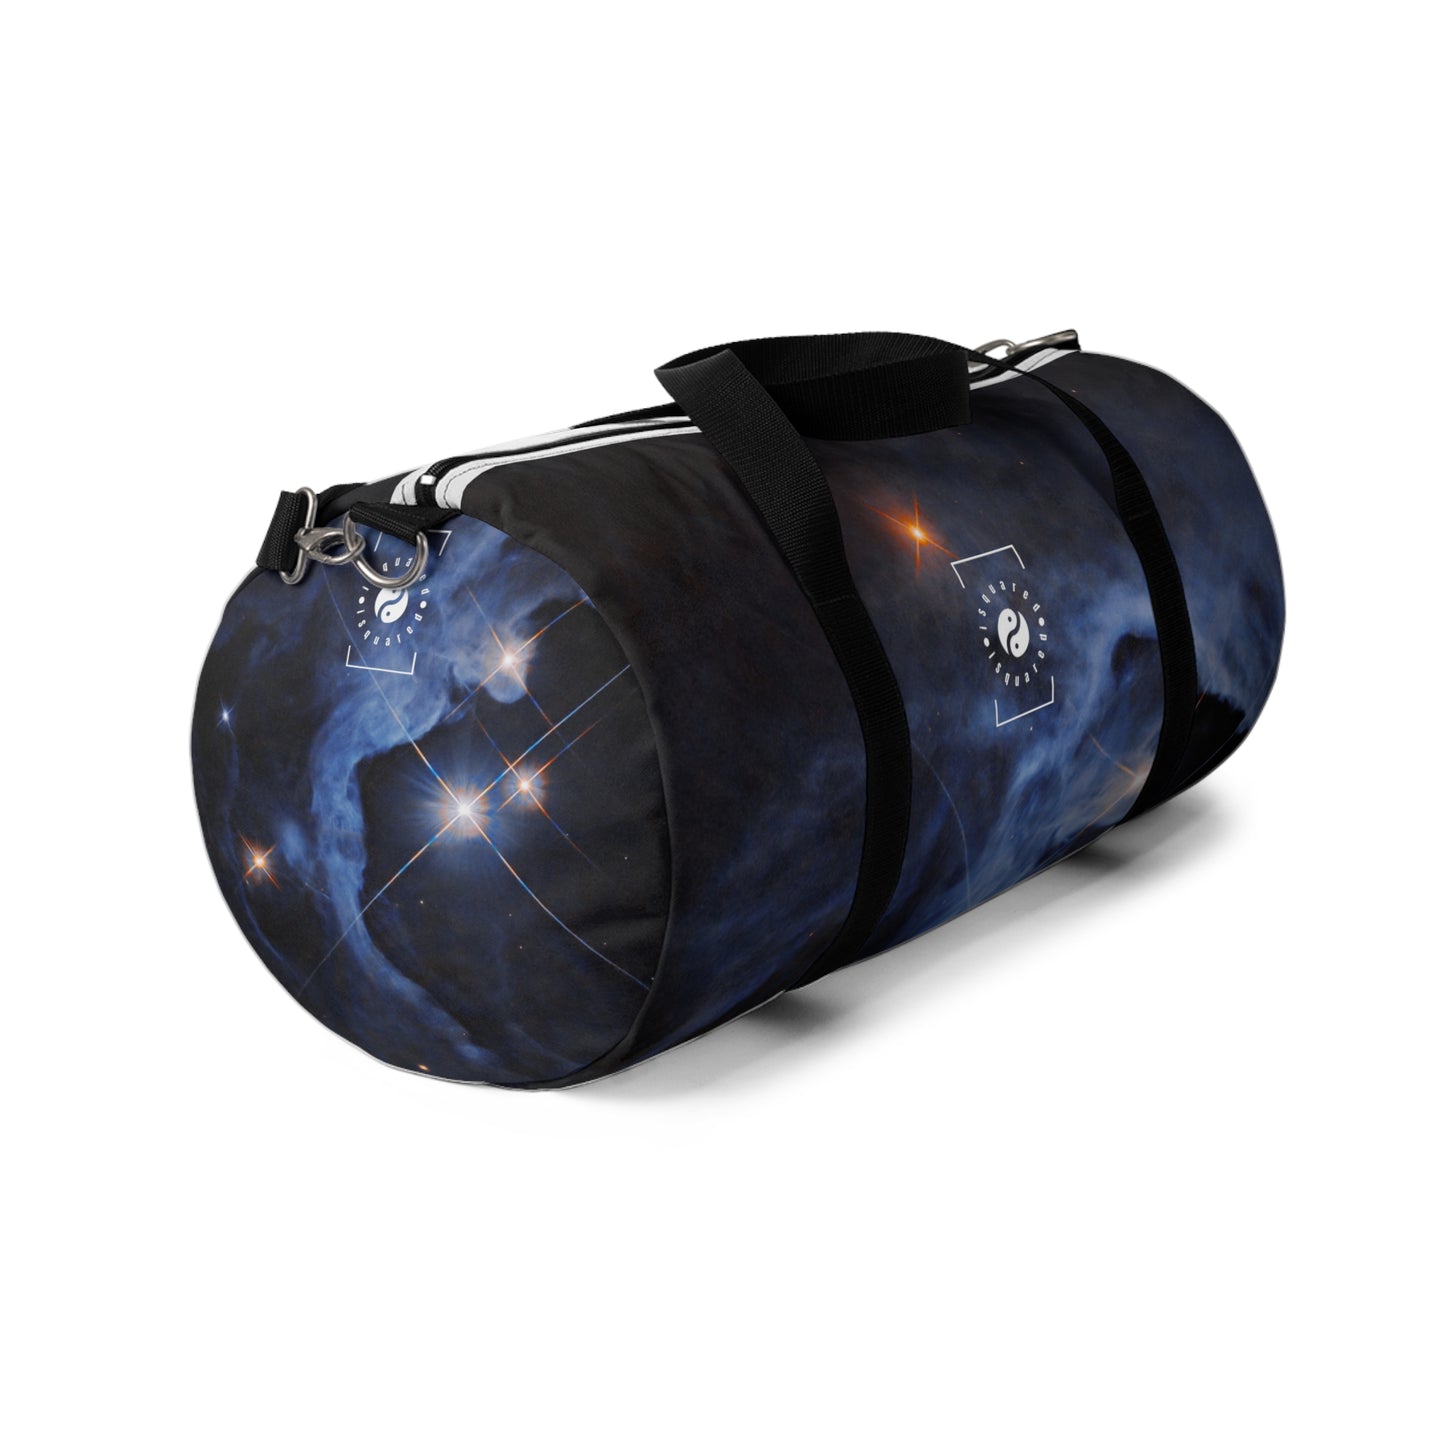 Systèmes HP Tau, HP Tau G2 et G3 3 étoiles capturés par Hubble - Duffle Bag